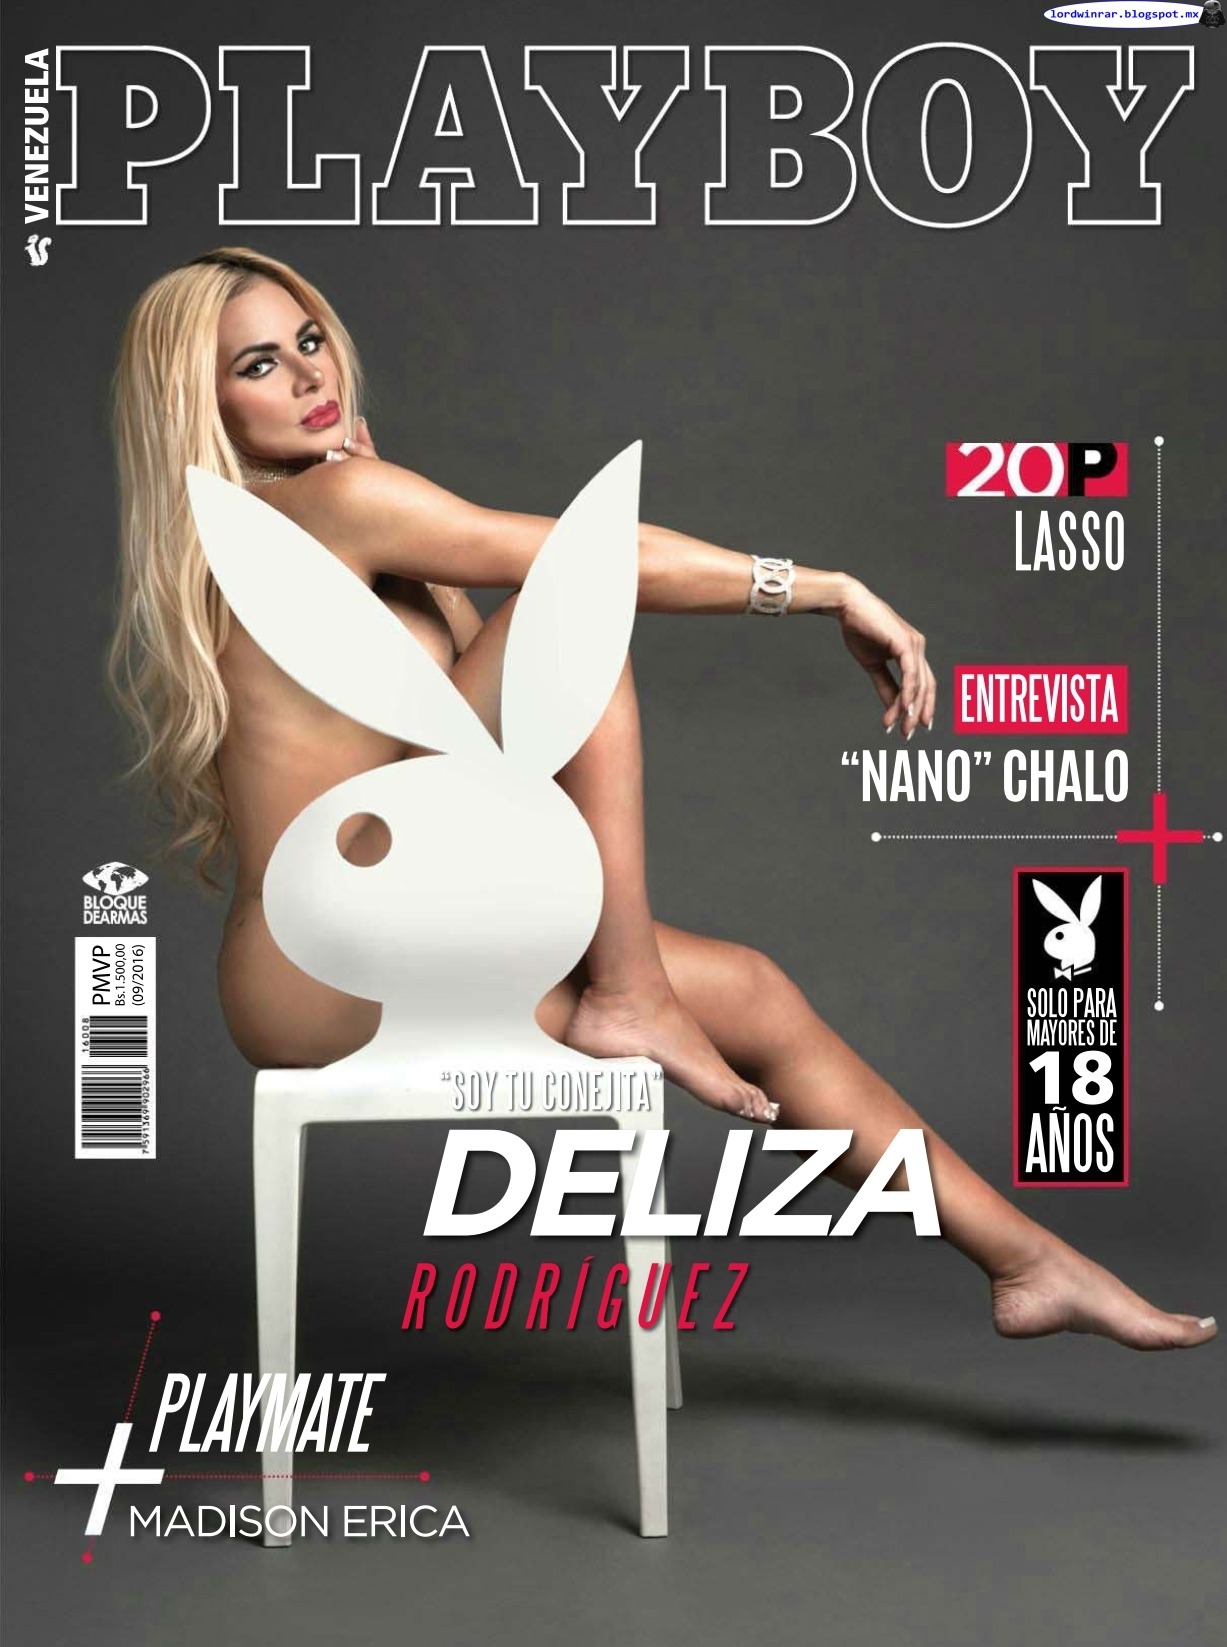   Deliza Rodriguez - Playboy Venezuela 2016 Septiembre (35 Fotos HQ)Deliza Rodriguez